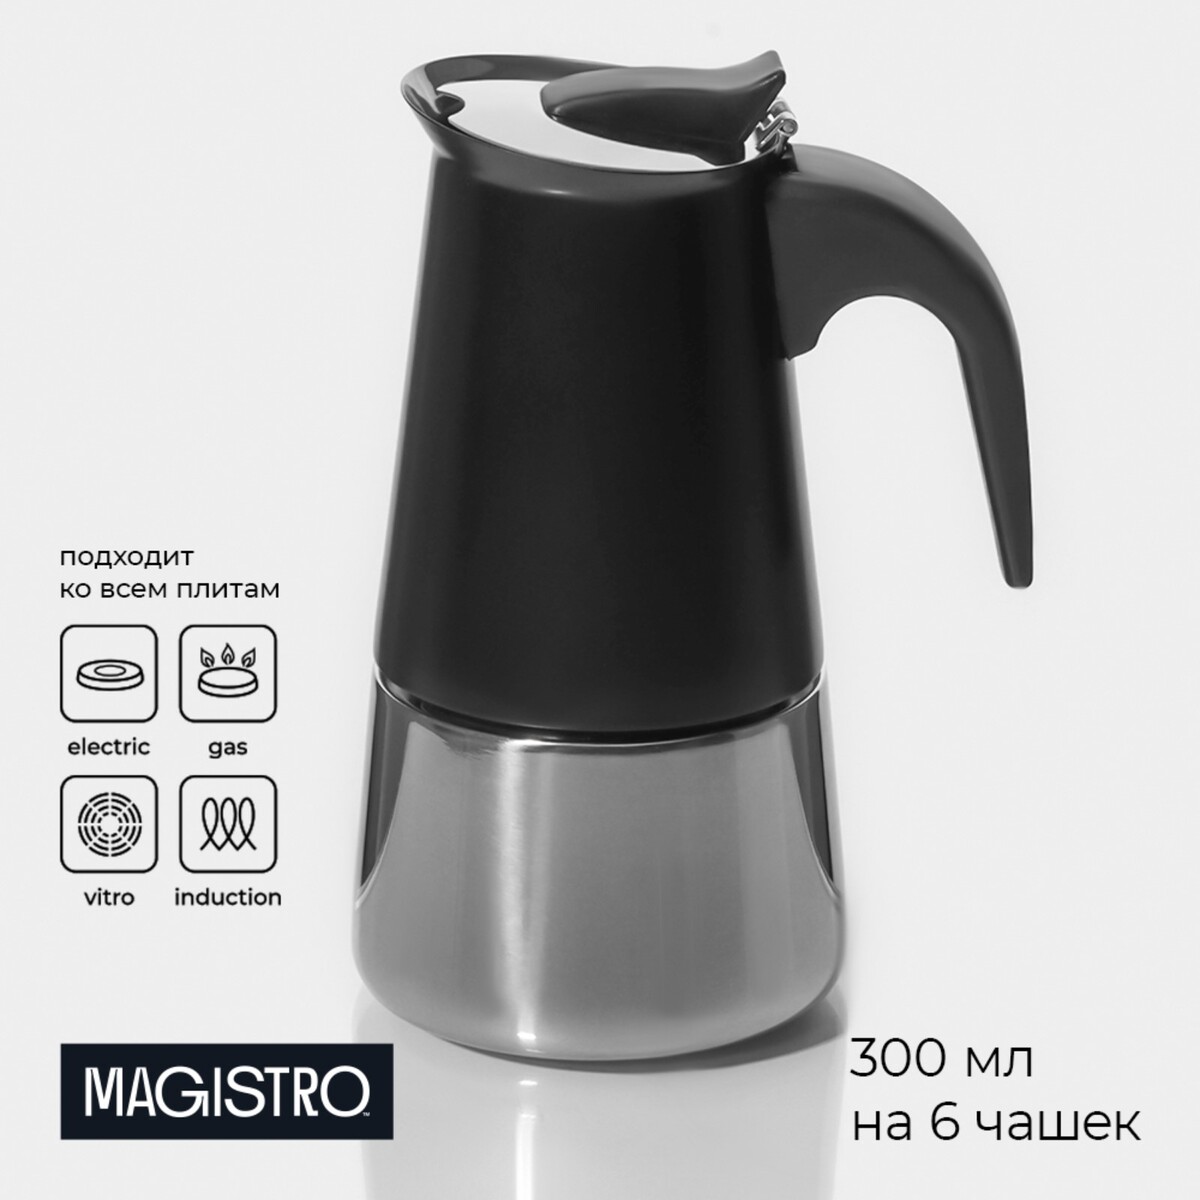 Кофеварка гейзерная magistro classic black, на 6 чашек, 300 мл, цвет черный